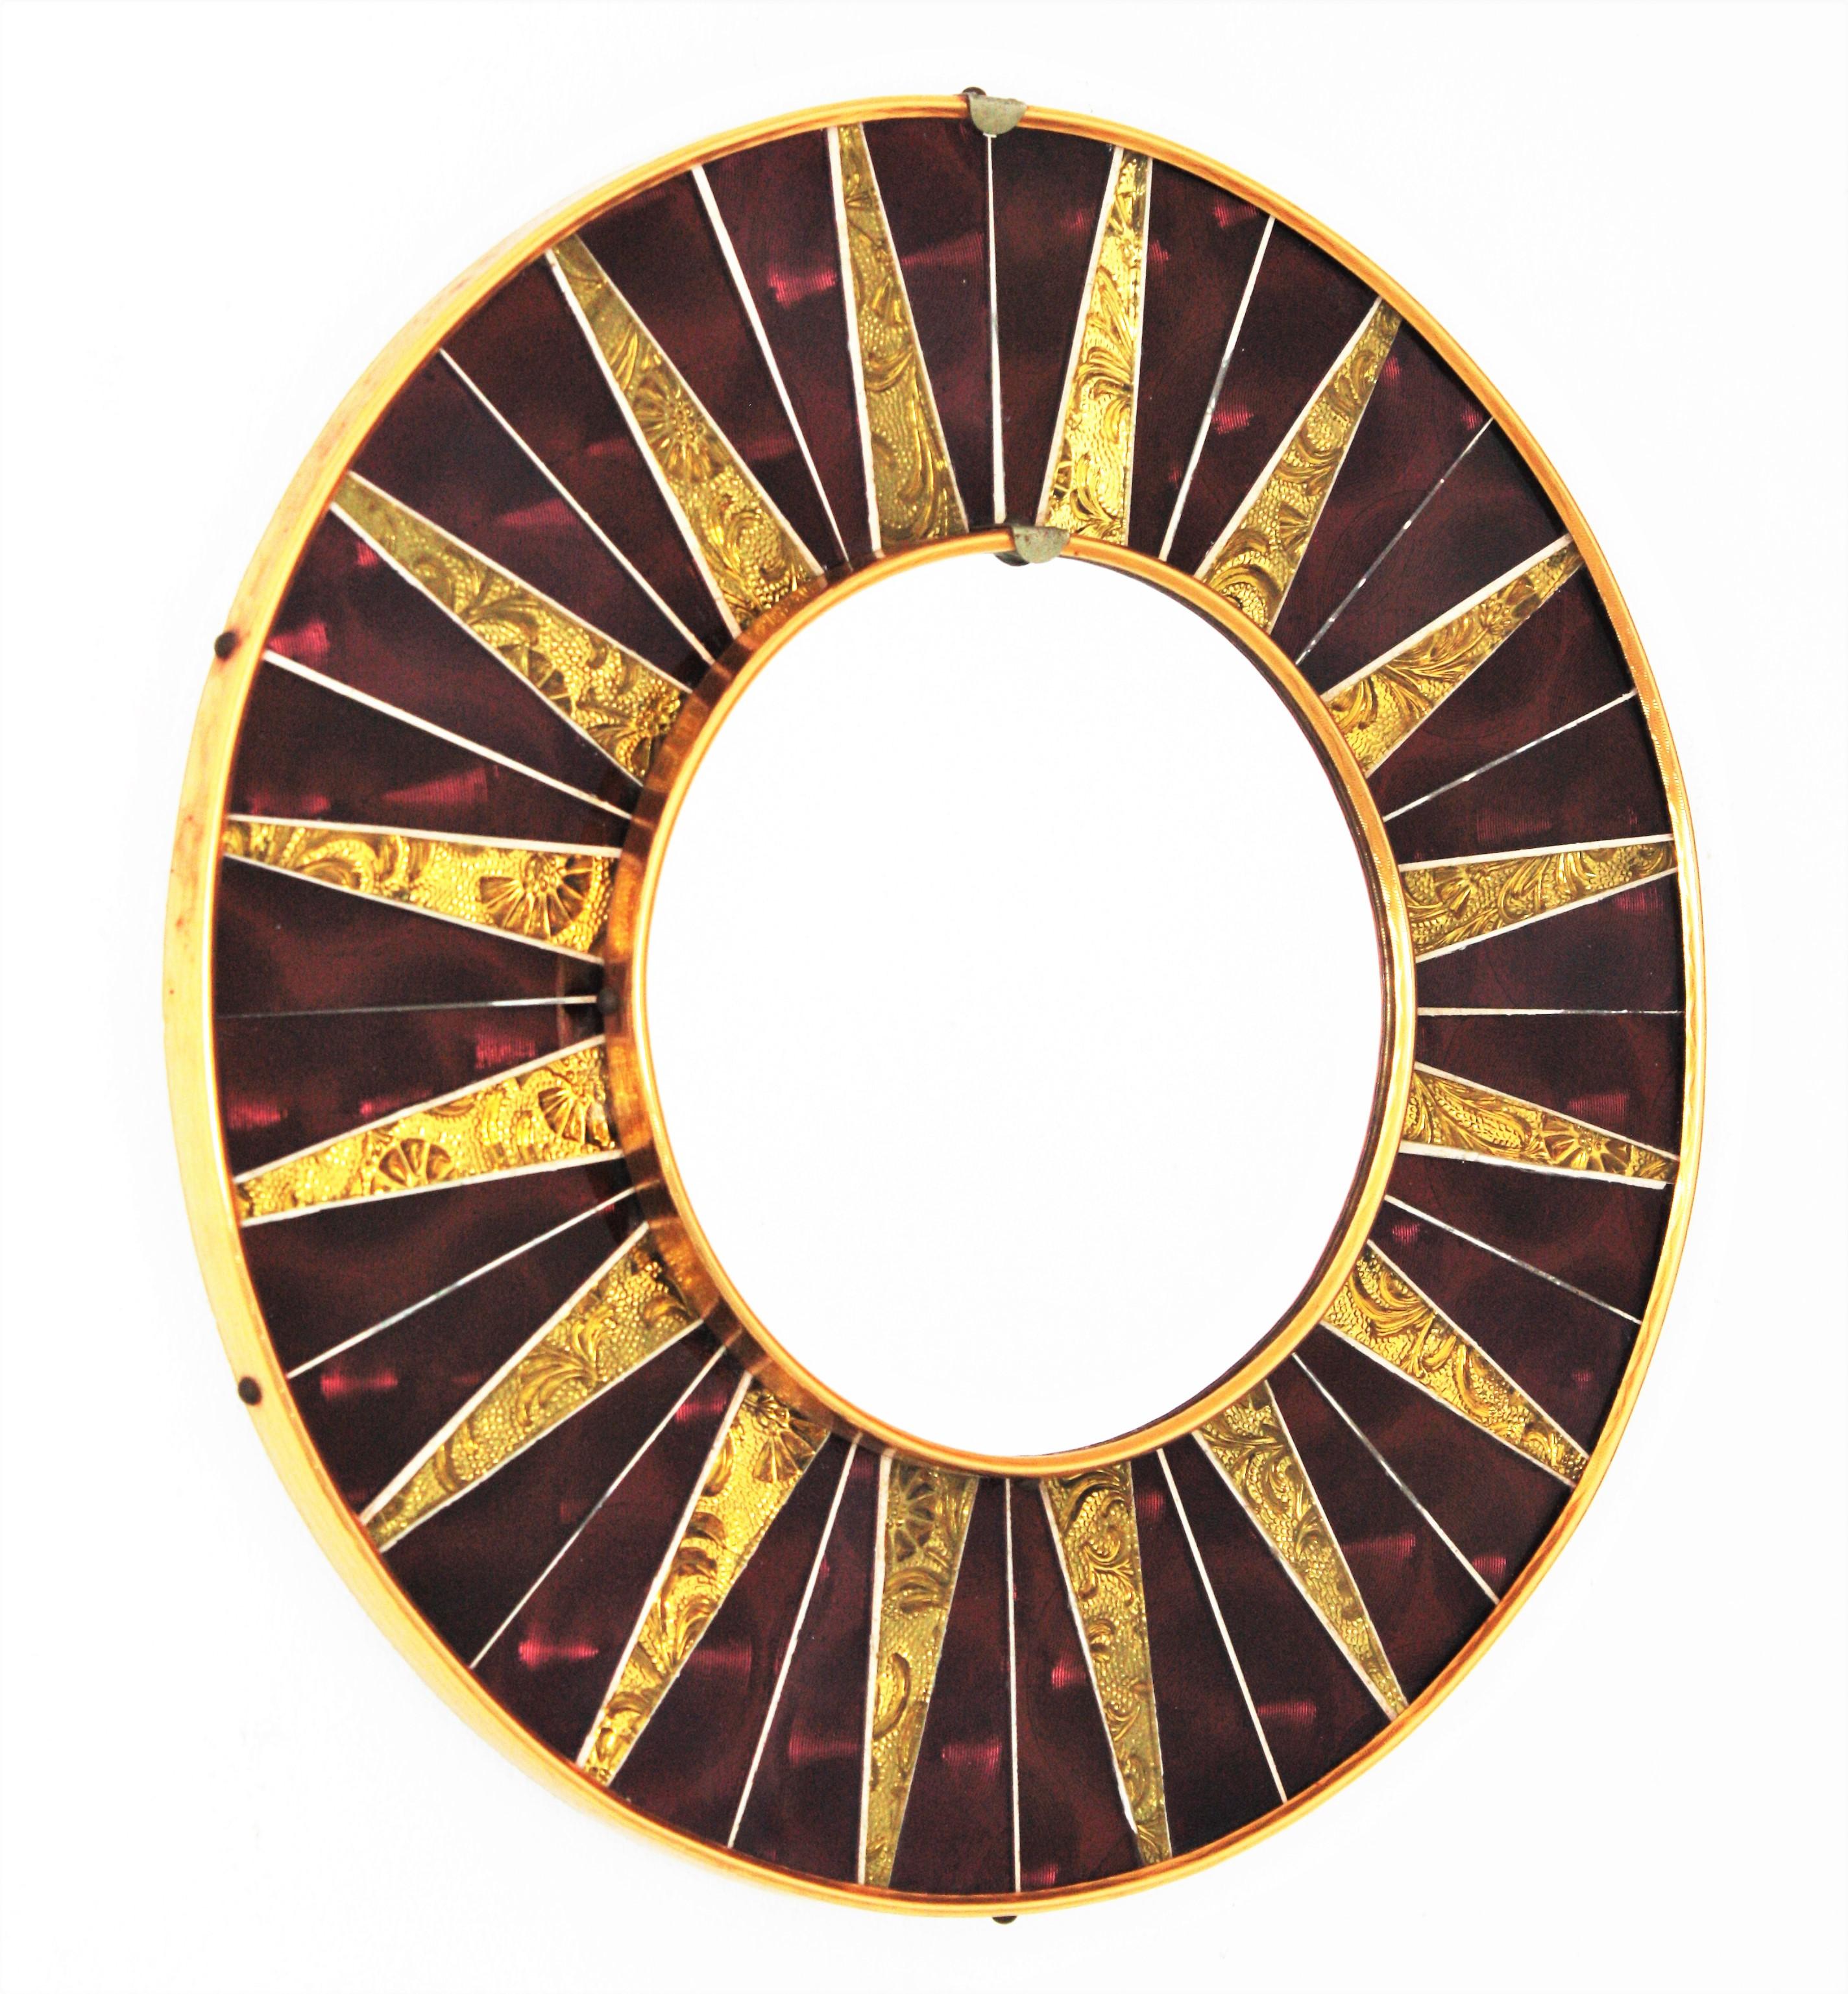 Ein stilvoller runder Spiegel der Jahrhundertmitte mit granat- und goldfarbenem Glasmosaikrahmen, Spanien, ca. 1960er Jahre.
Der Rahmen besteht aus einem Hintergrund aus burgunder- bzw. granatfarbenen Glasstücken und goldenen, verspiegelten